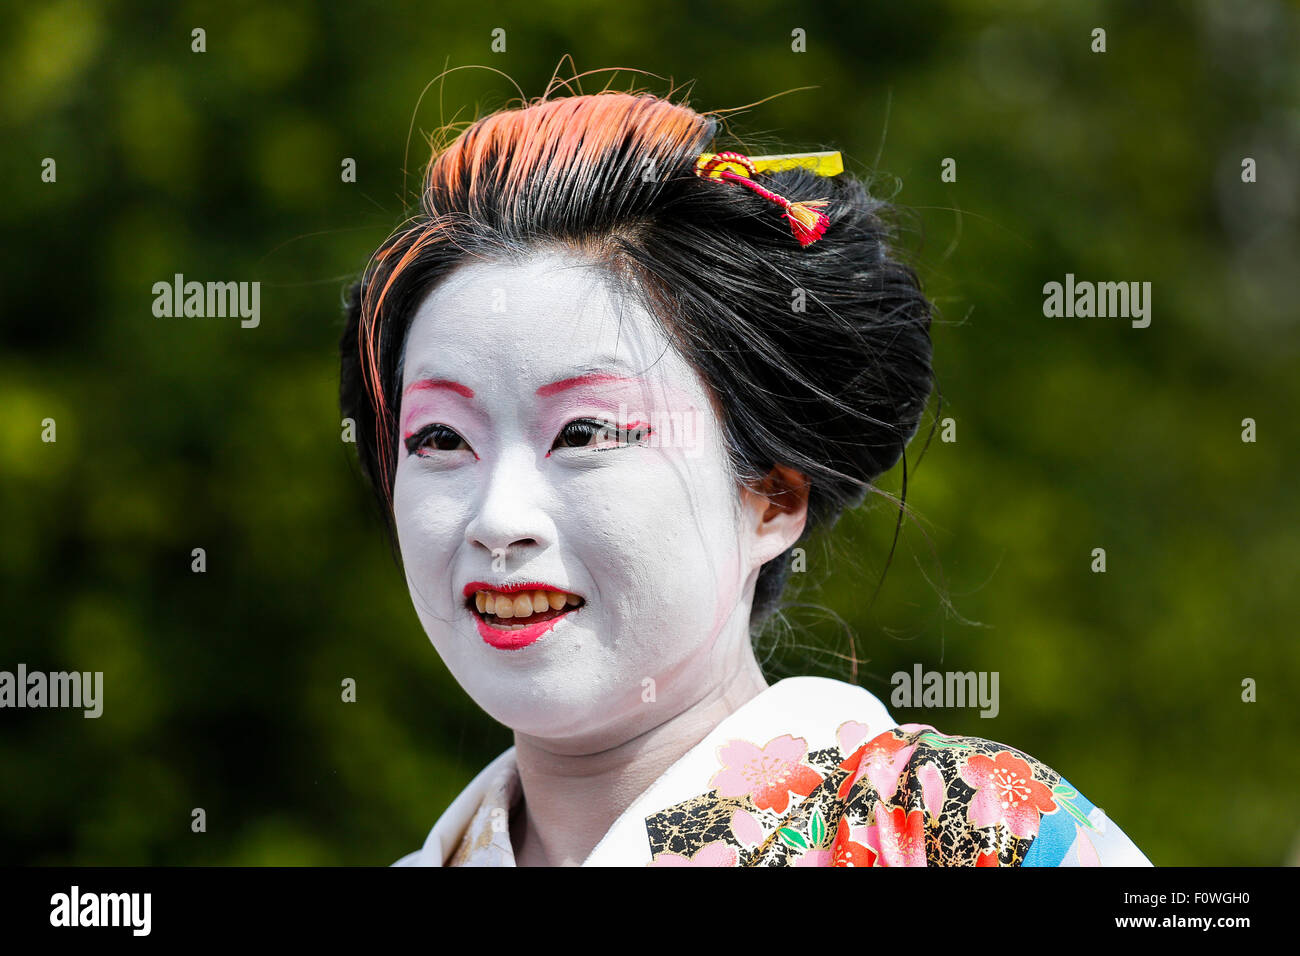 Danseur Japonais effectuant au Edinburgh Fringe Festival, Ecosse, Royaume-Uni Banque D'Images